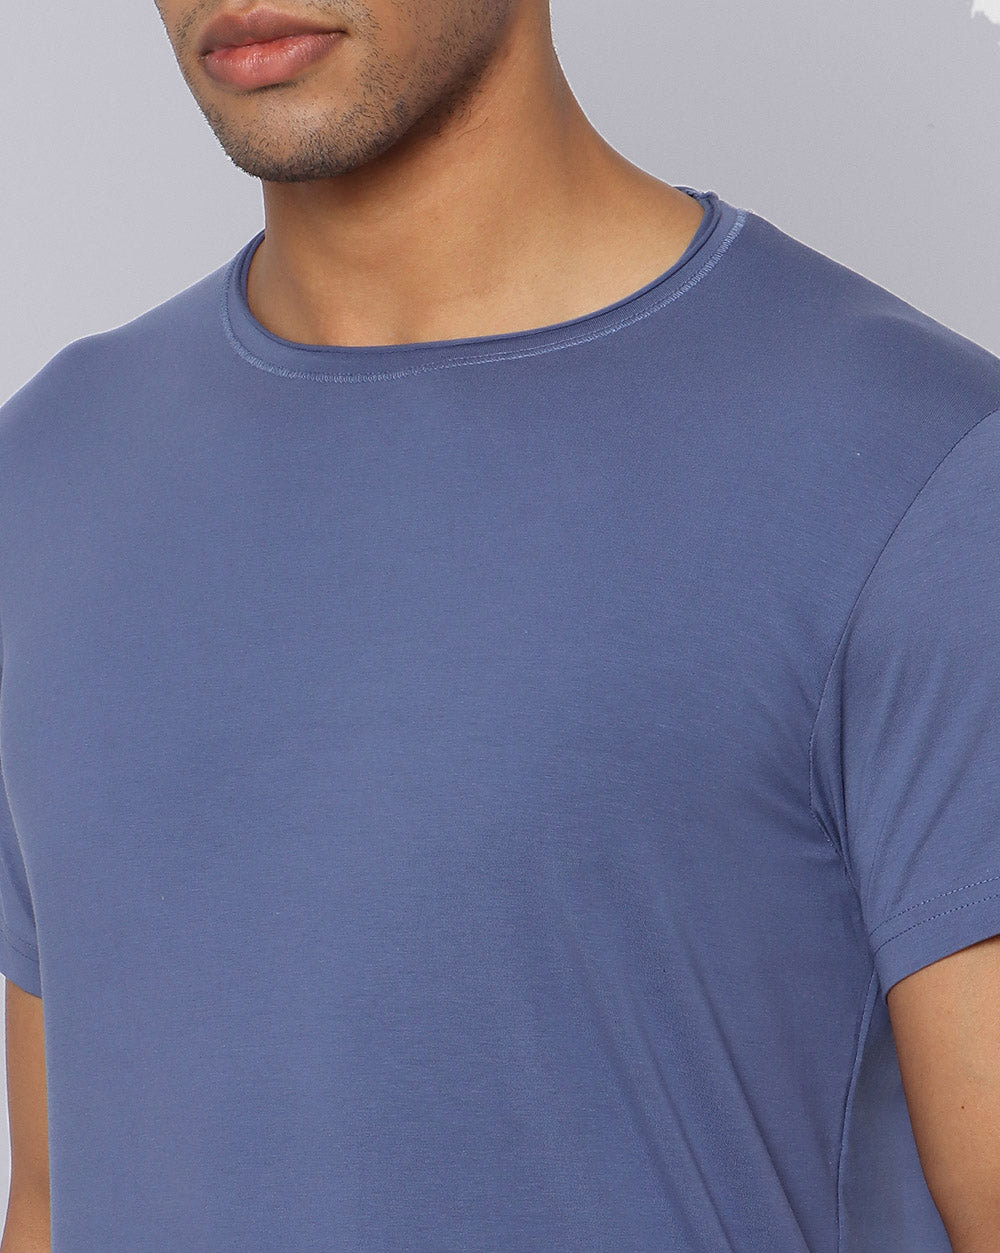 Crewneck Comfort Strech T-Shirt Light Blue